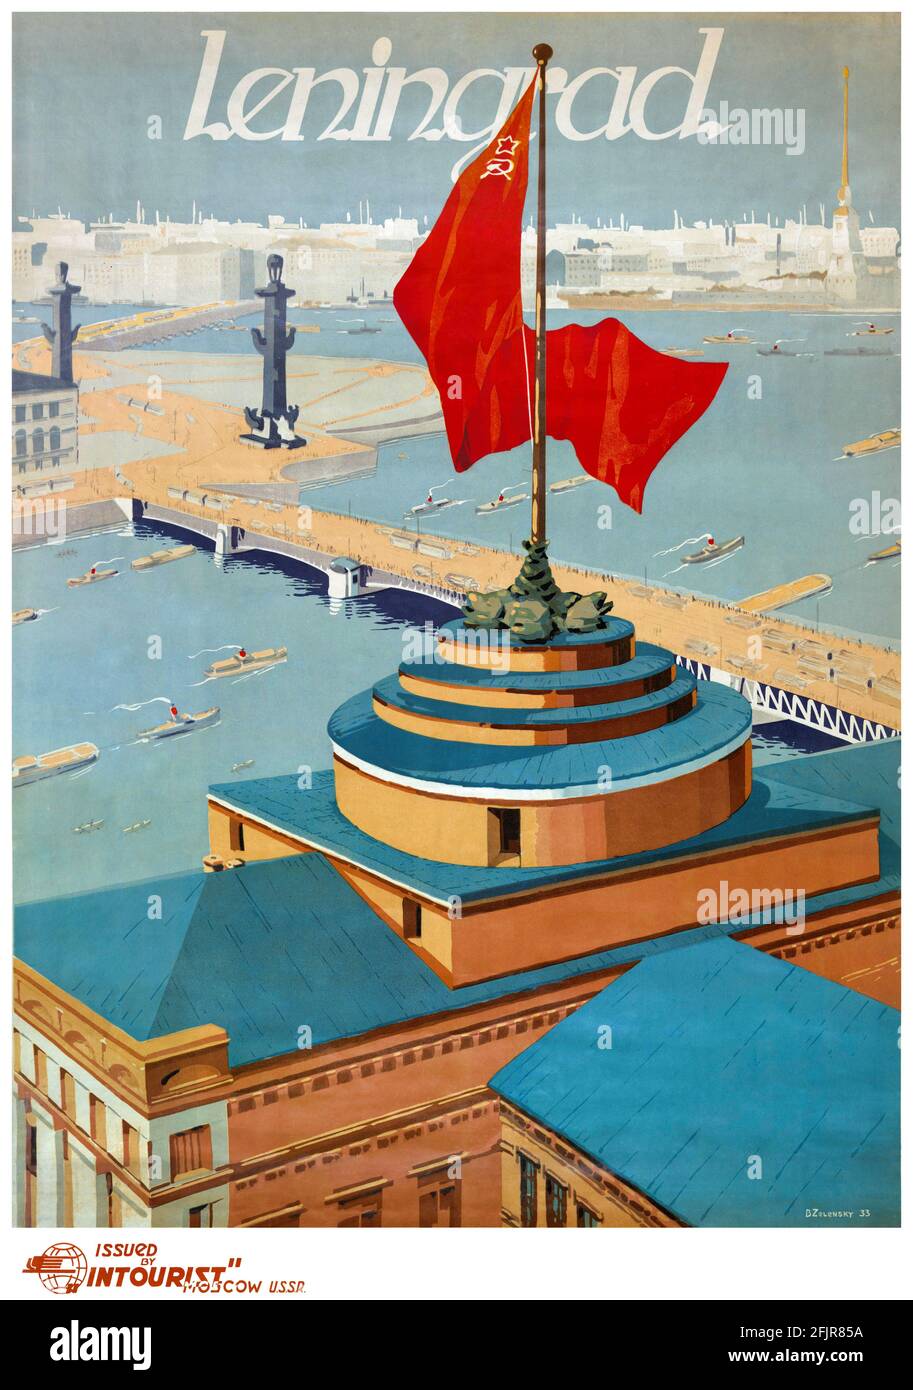 Leningrad. Intourist-Plakat von Boris Alexandrowitsch Zelensky (1914-1984). Restauriertes Vintage-Poster, das 1933 in der UdSSR veröffentlicht wurde. Stockfoto